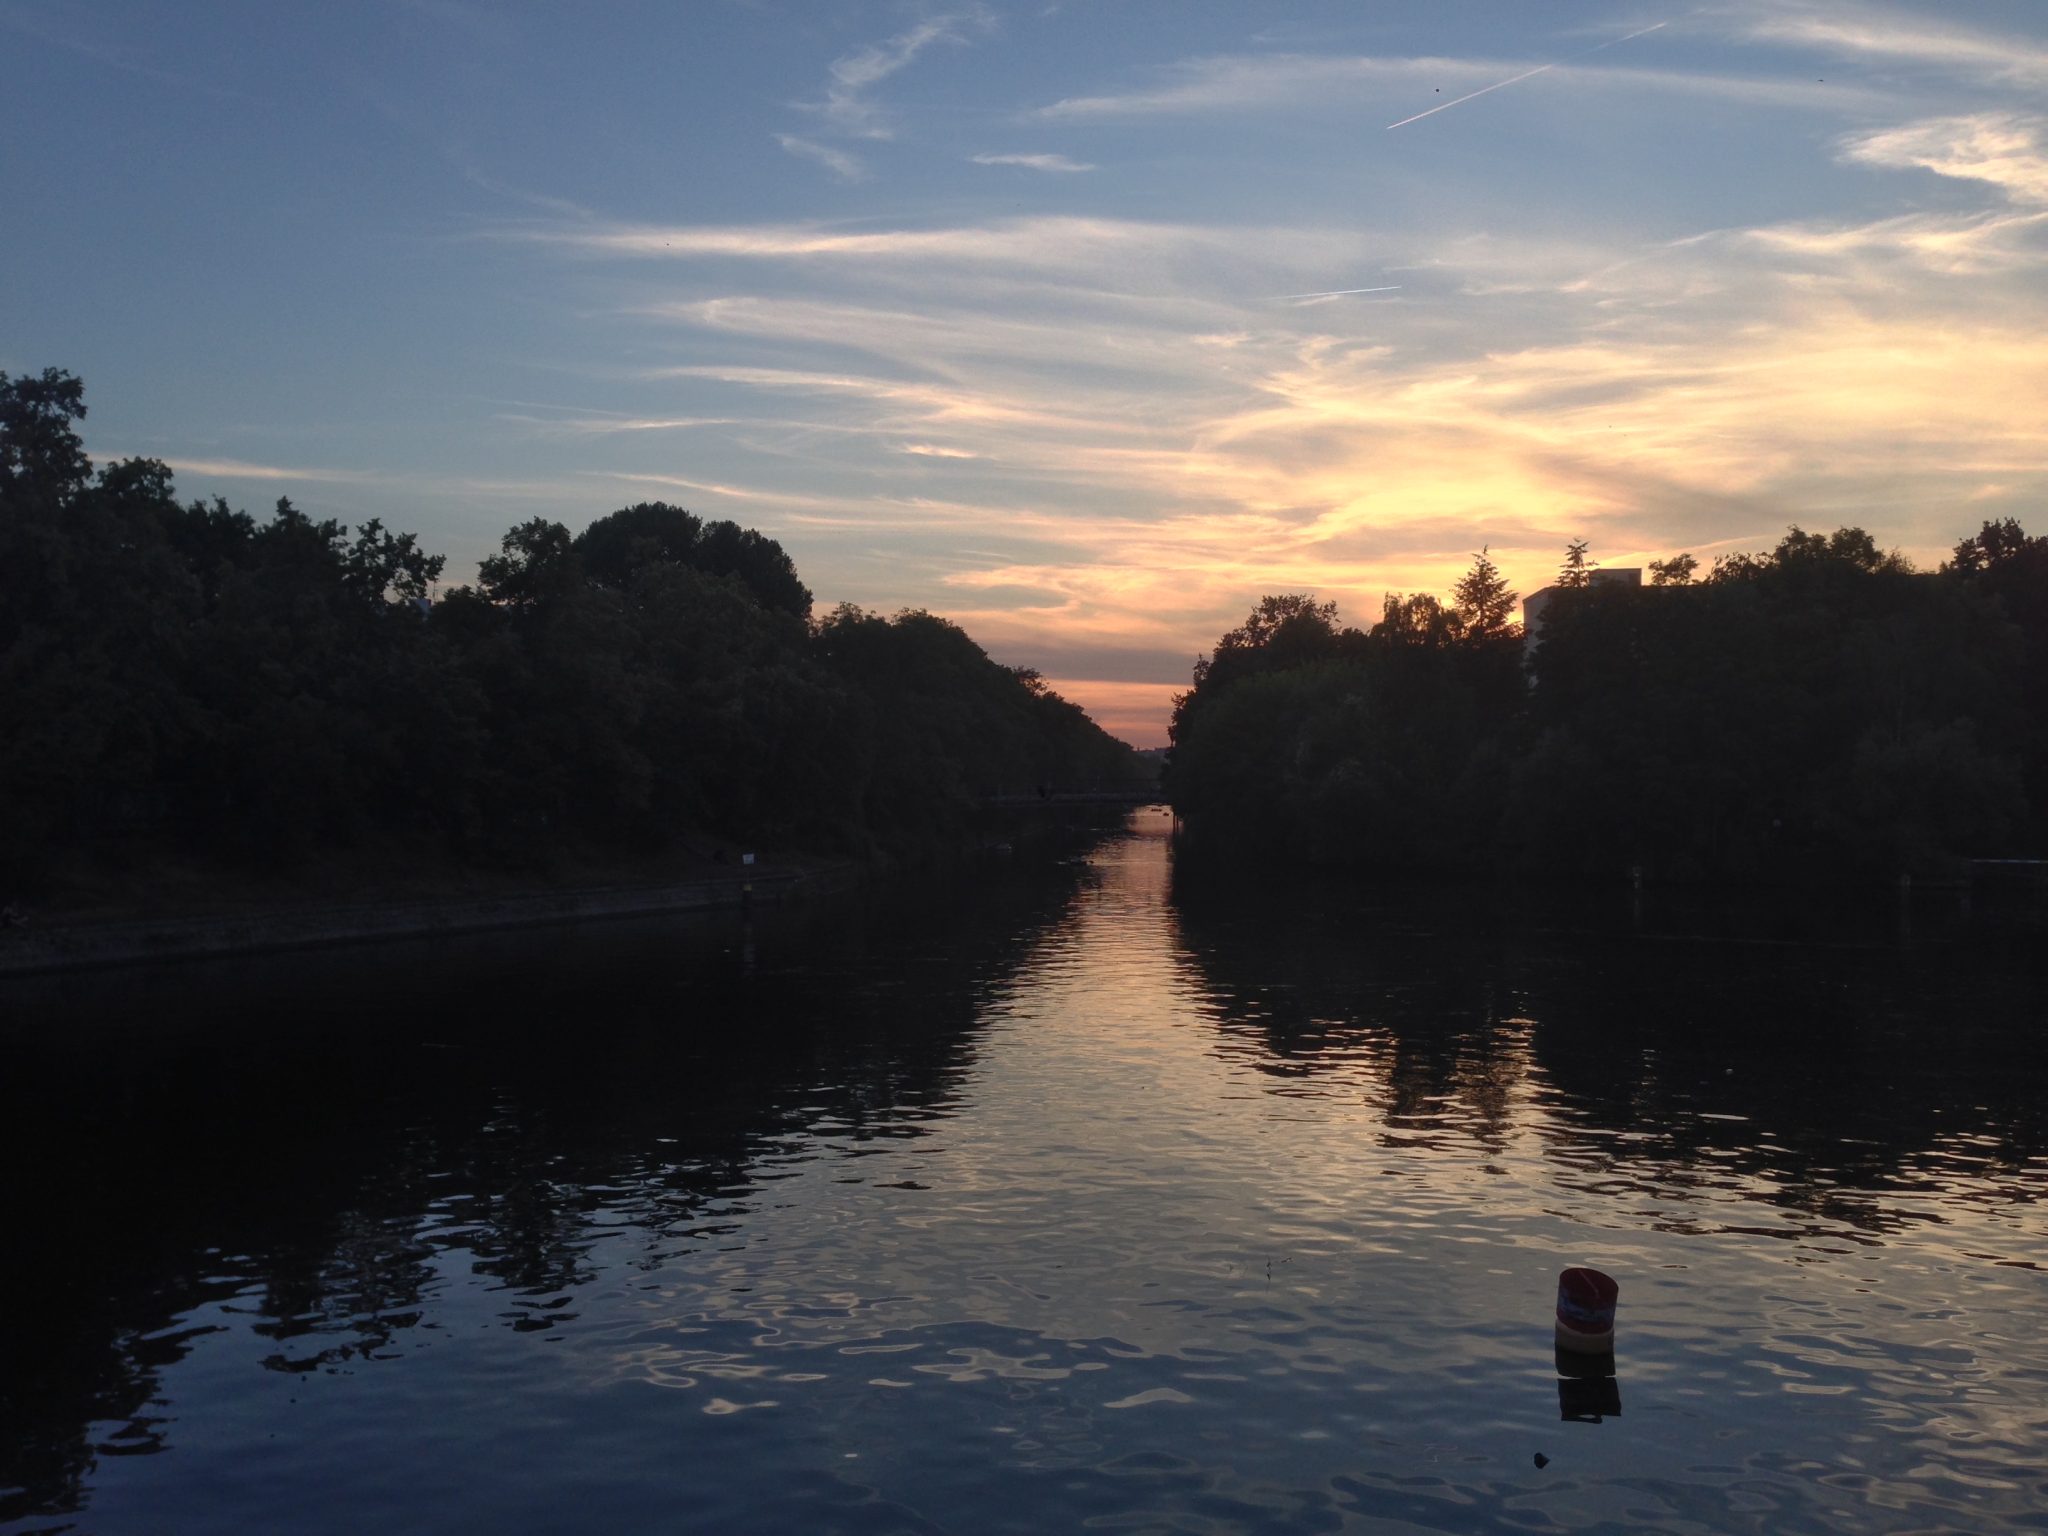 River scene at dusk